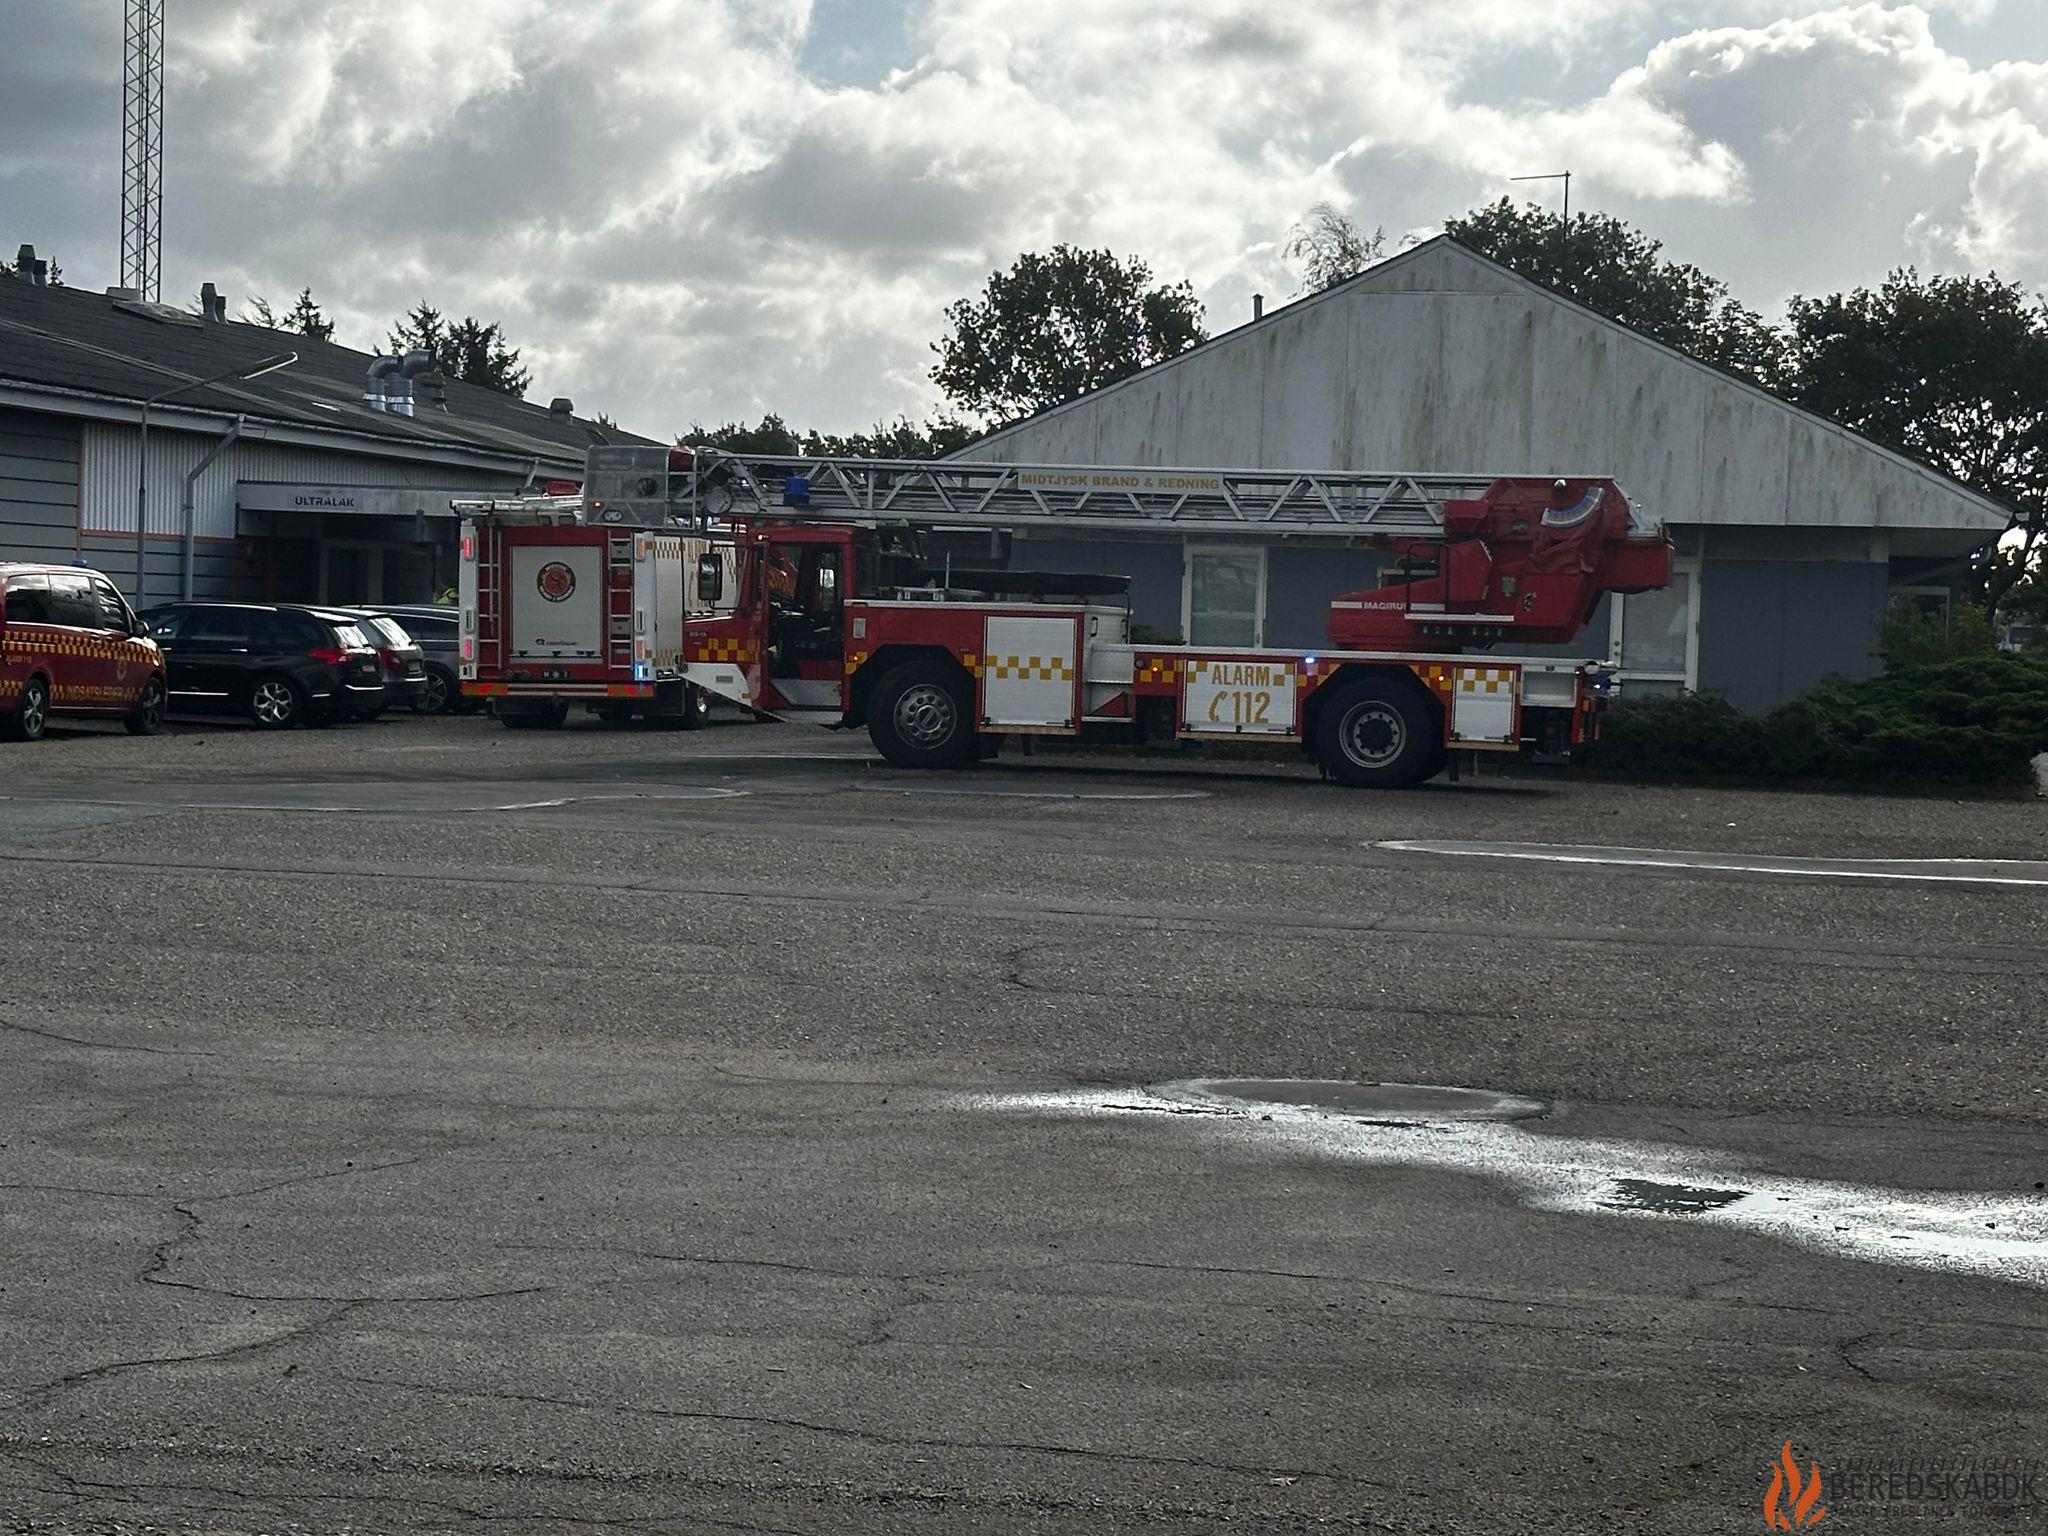 05/10-23 Aktivering af automatisk brandalarm kalder brandvæsenet til Nørhaven A/S i Viborg